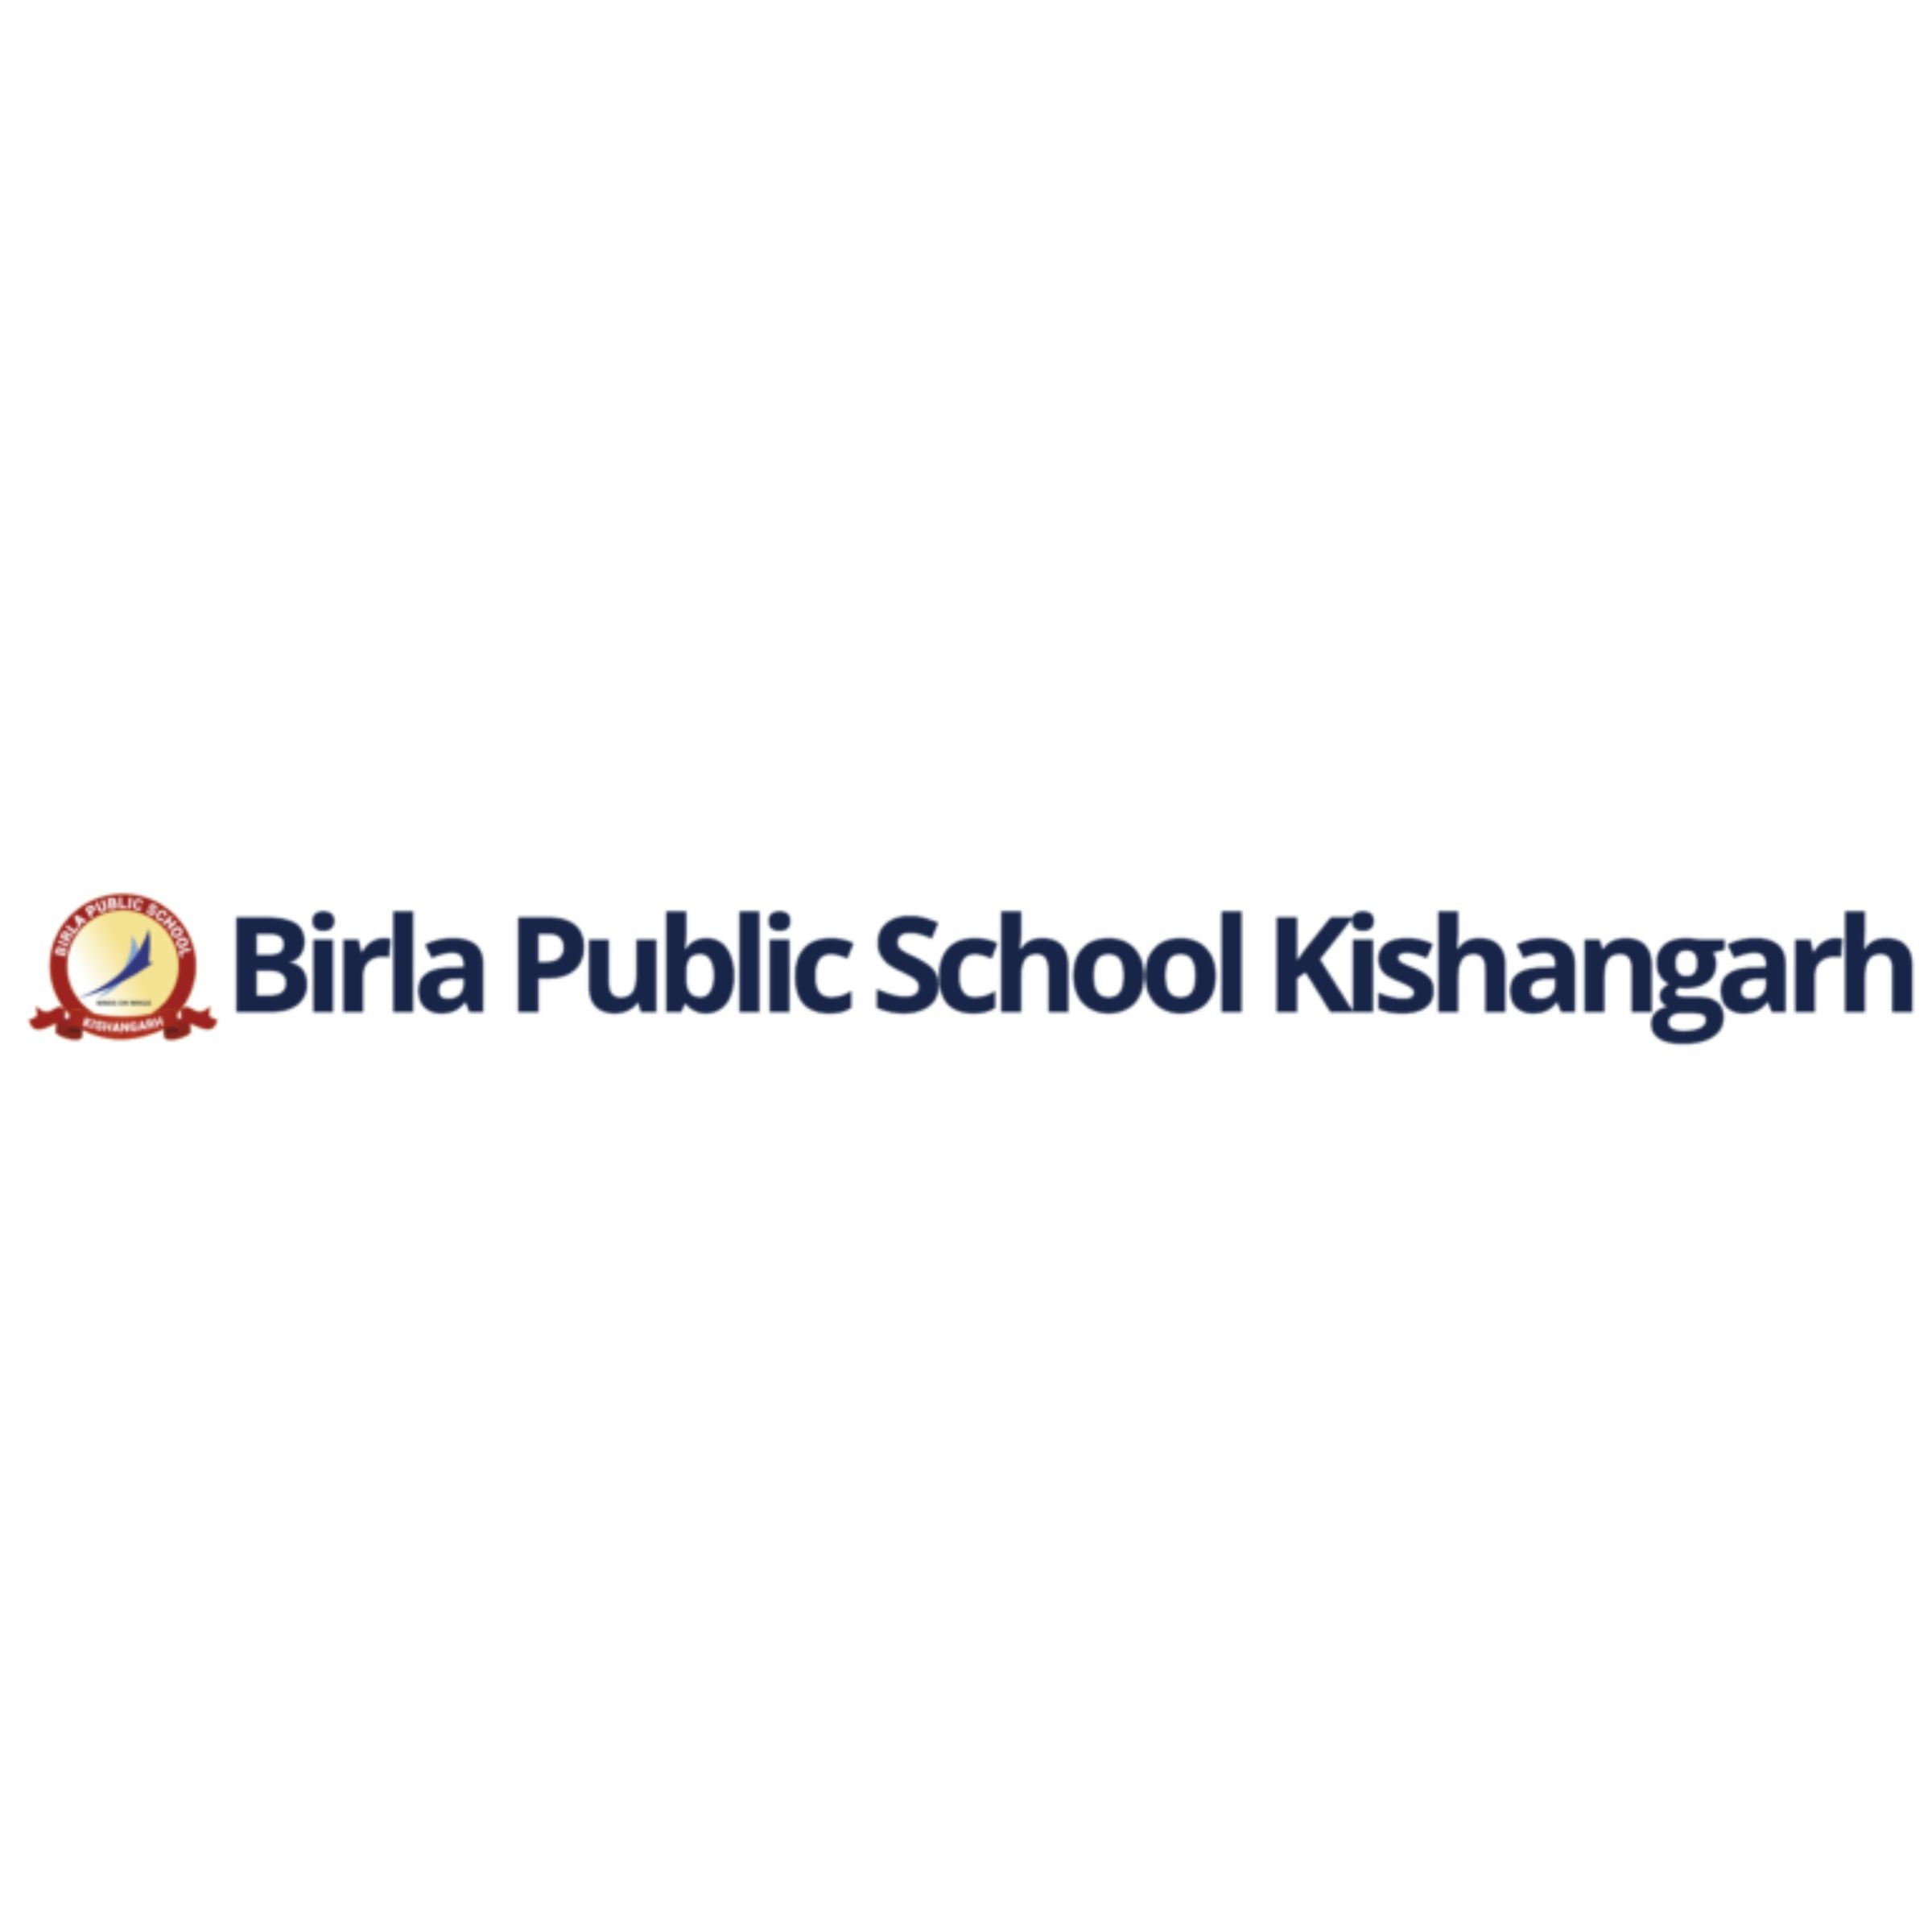 birla public school kishangarh logo